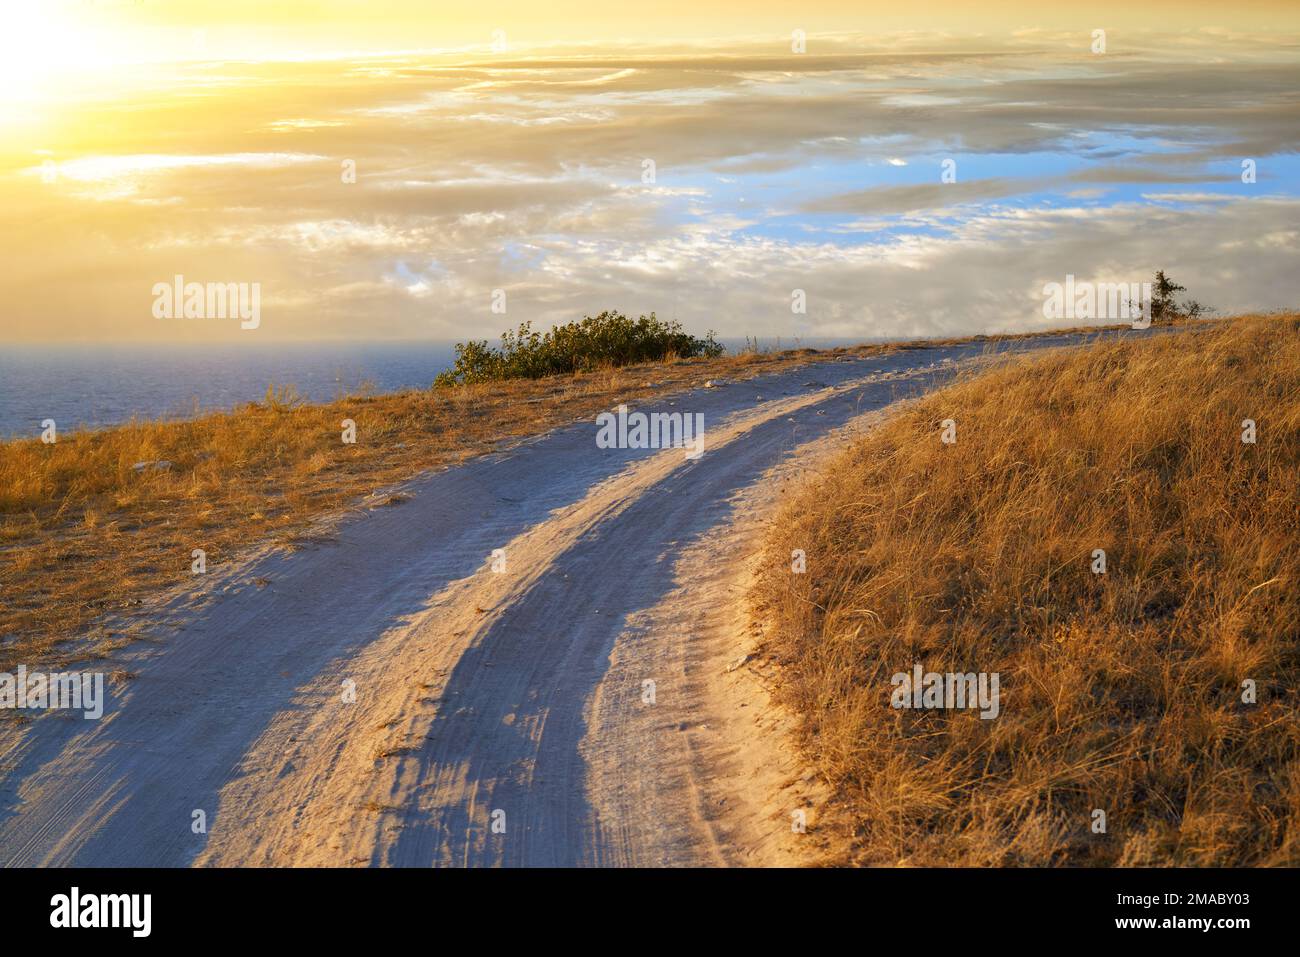 Eine scharfe Kurve einer unbefestigten Straße nahe der Schwarzmeerküste im Dhangul-Trakt bei Sonnenuntergang. Krim, Ukraine Stockfoto